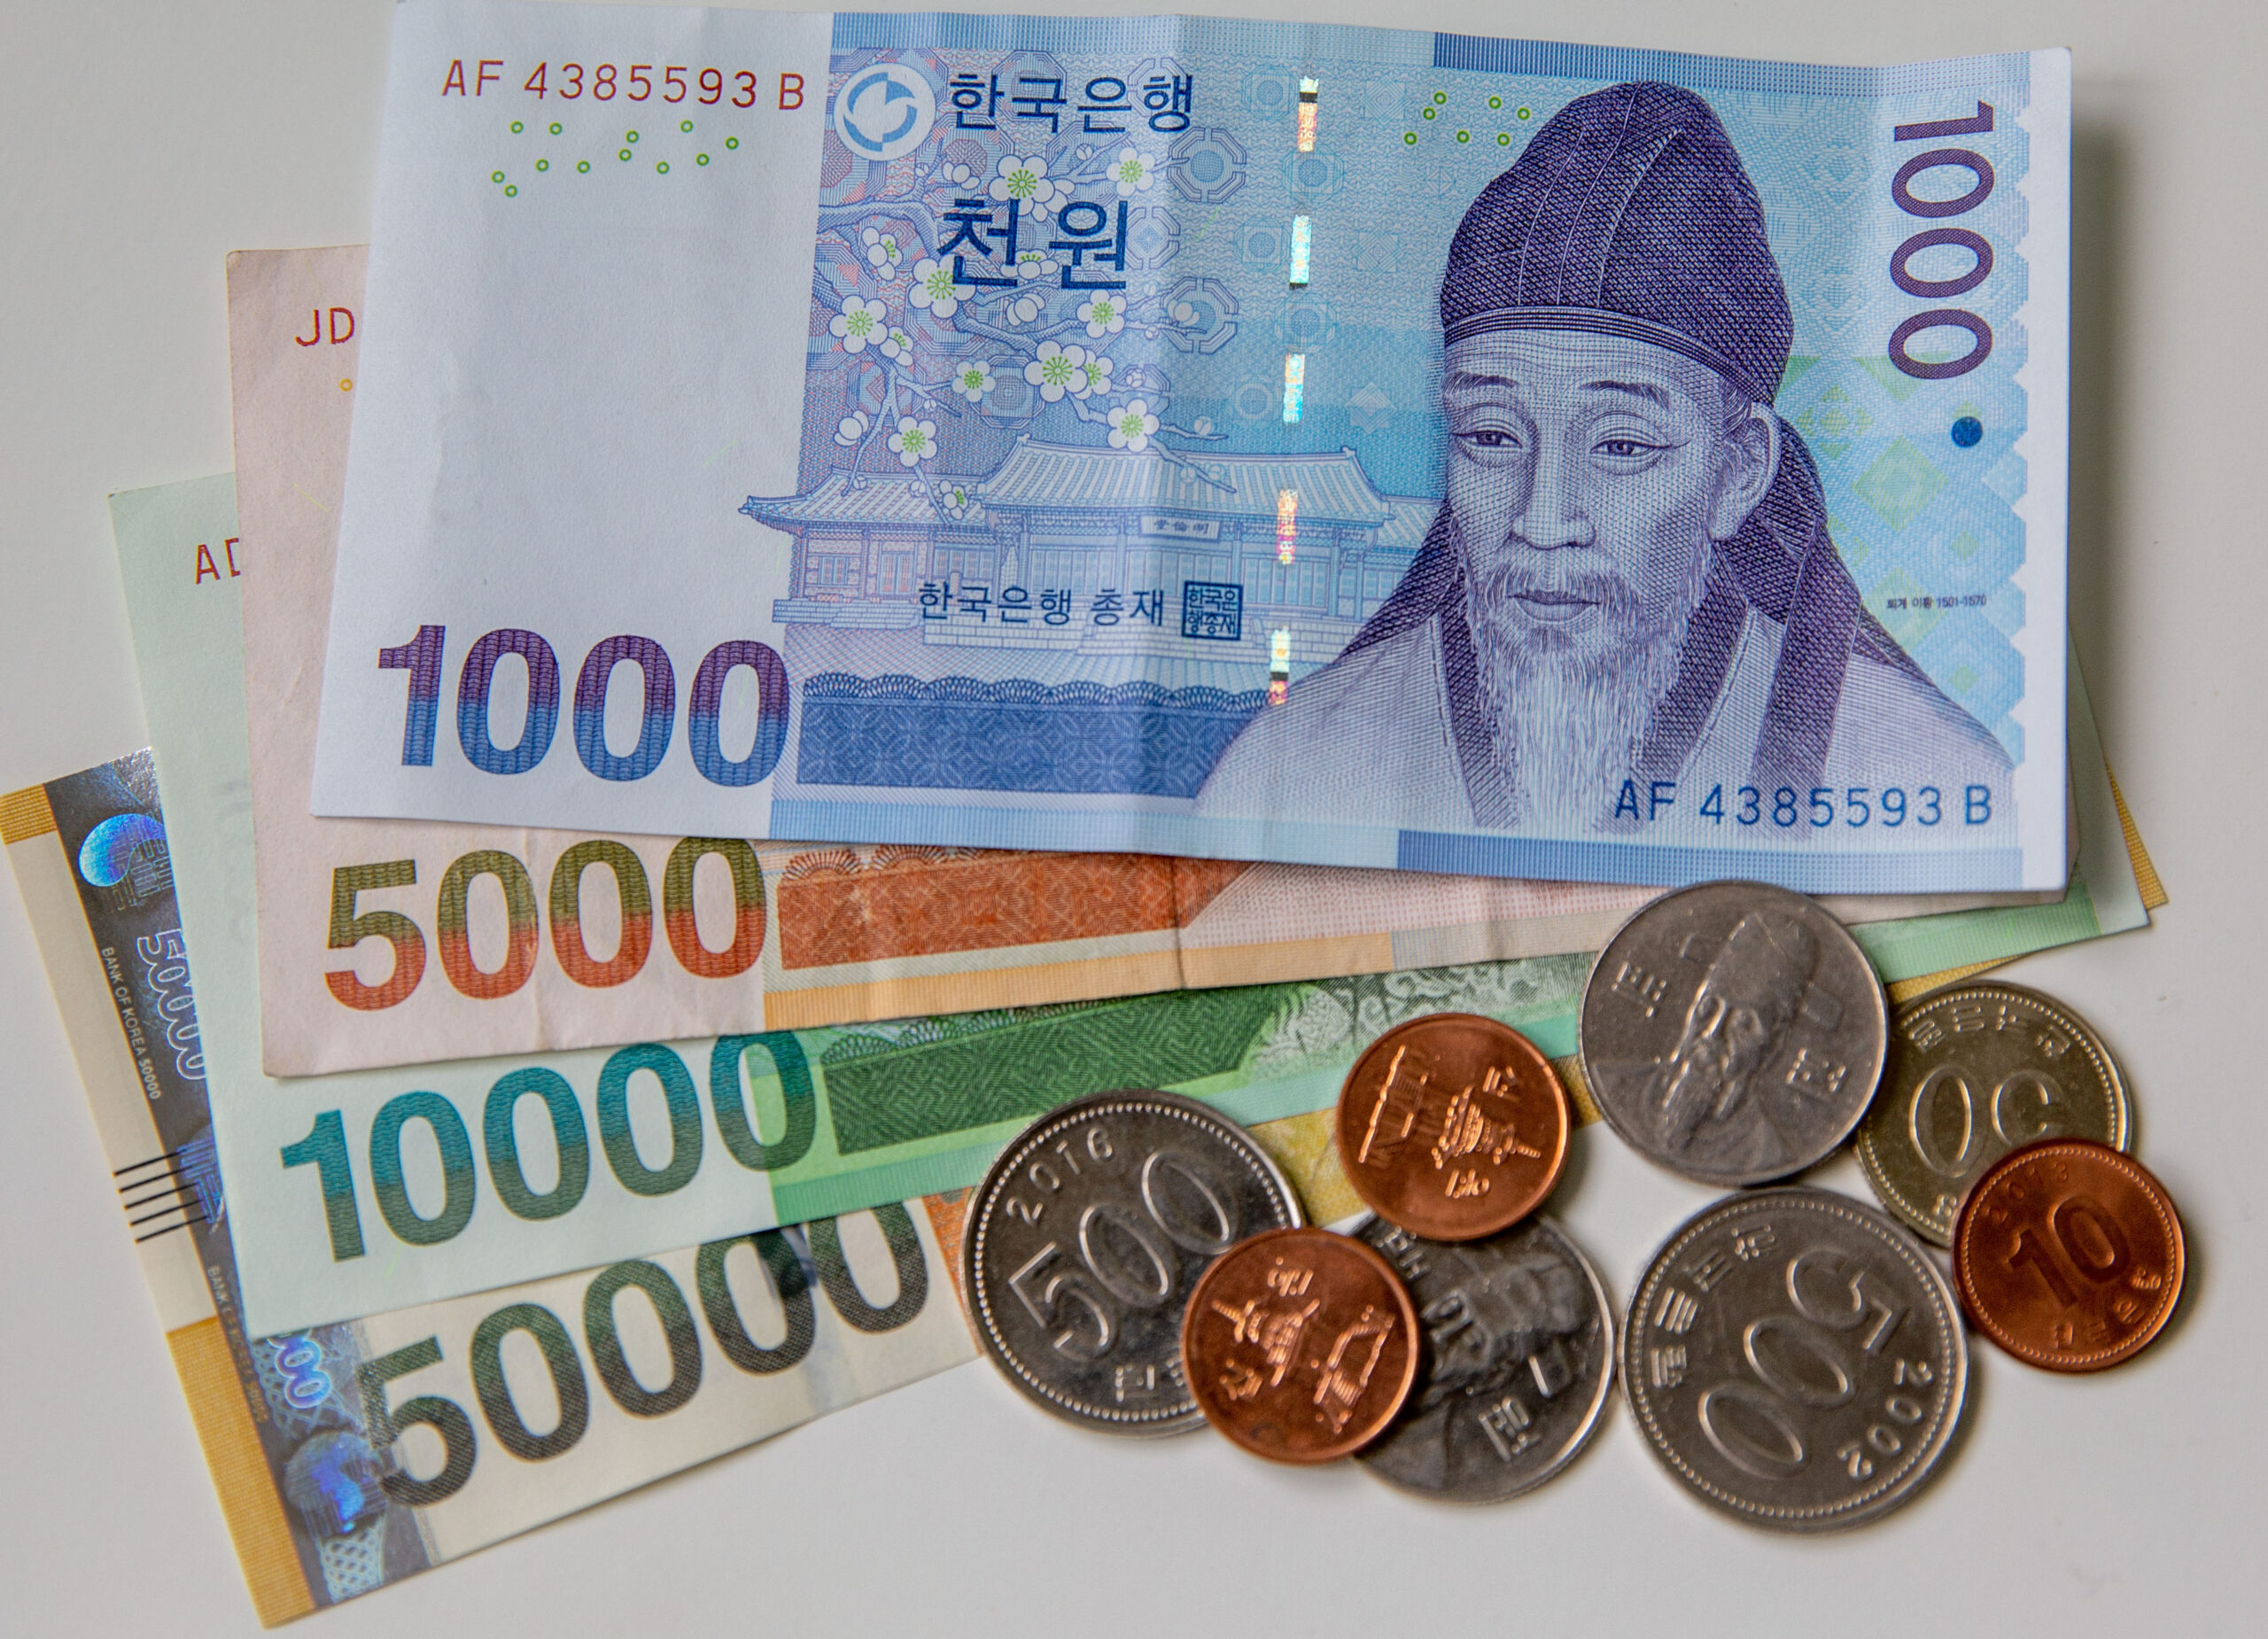 อายุใช้งาน 'ธนบัตรเกาหลีใต้' ยาวนานขึ้น เหตุคนใช้เงินสดน้อยลง